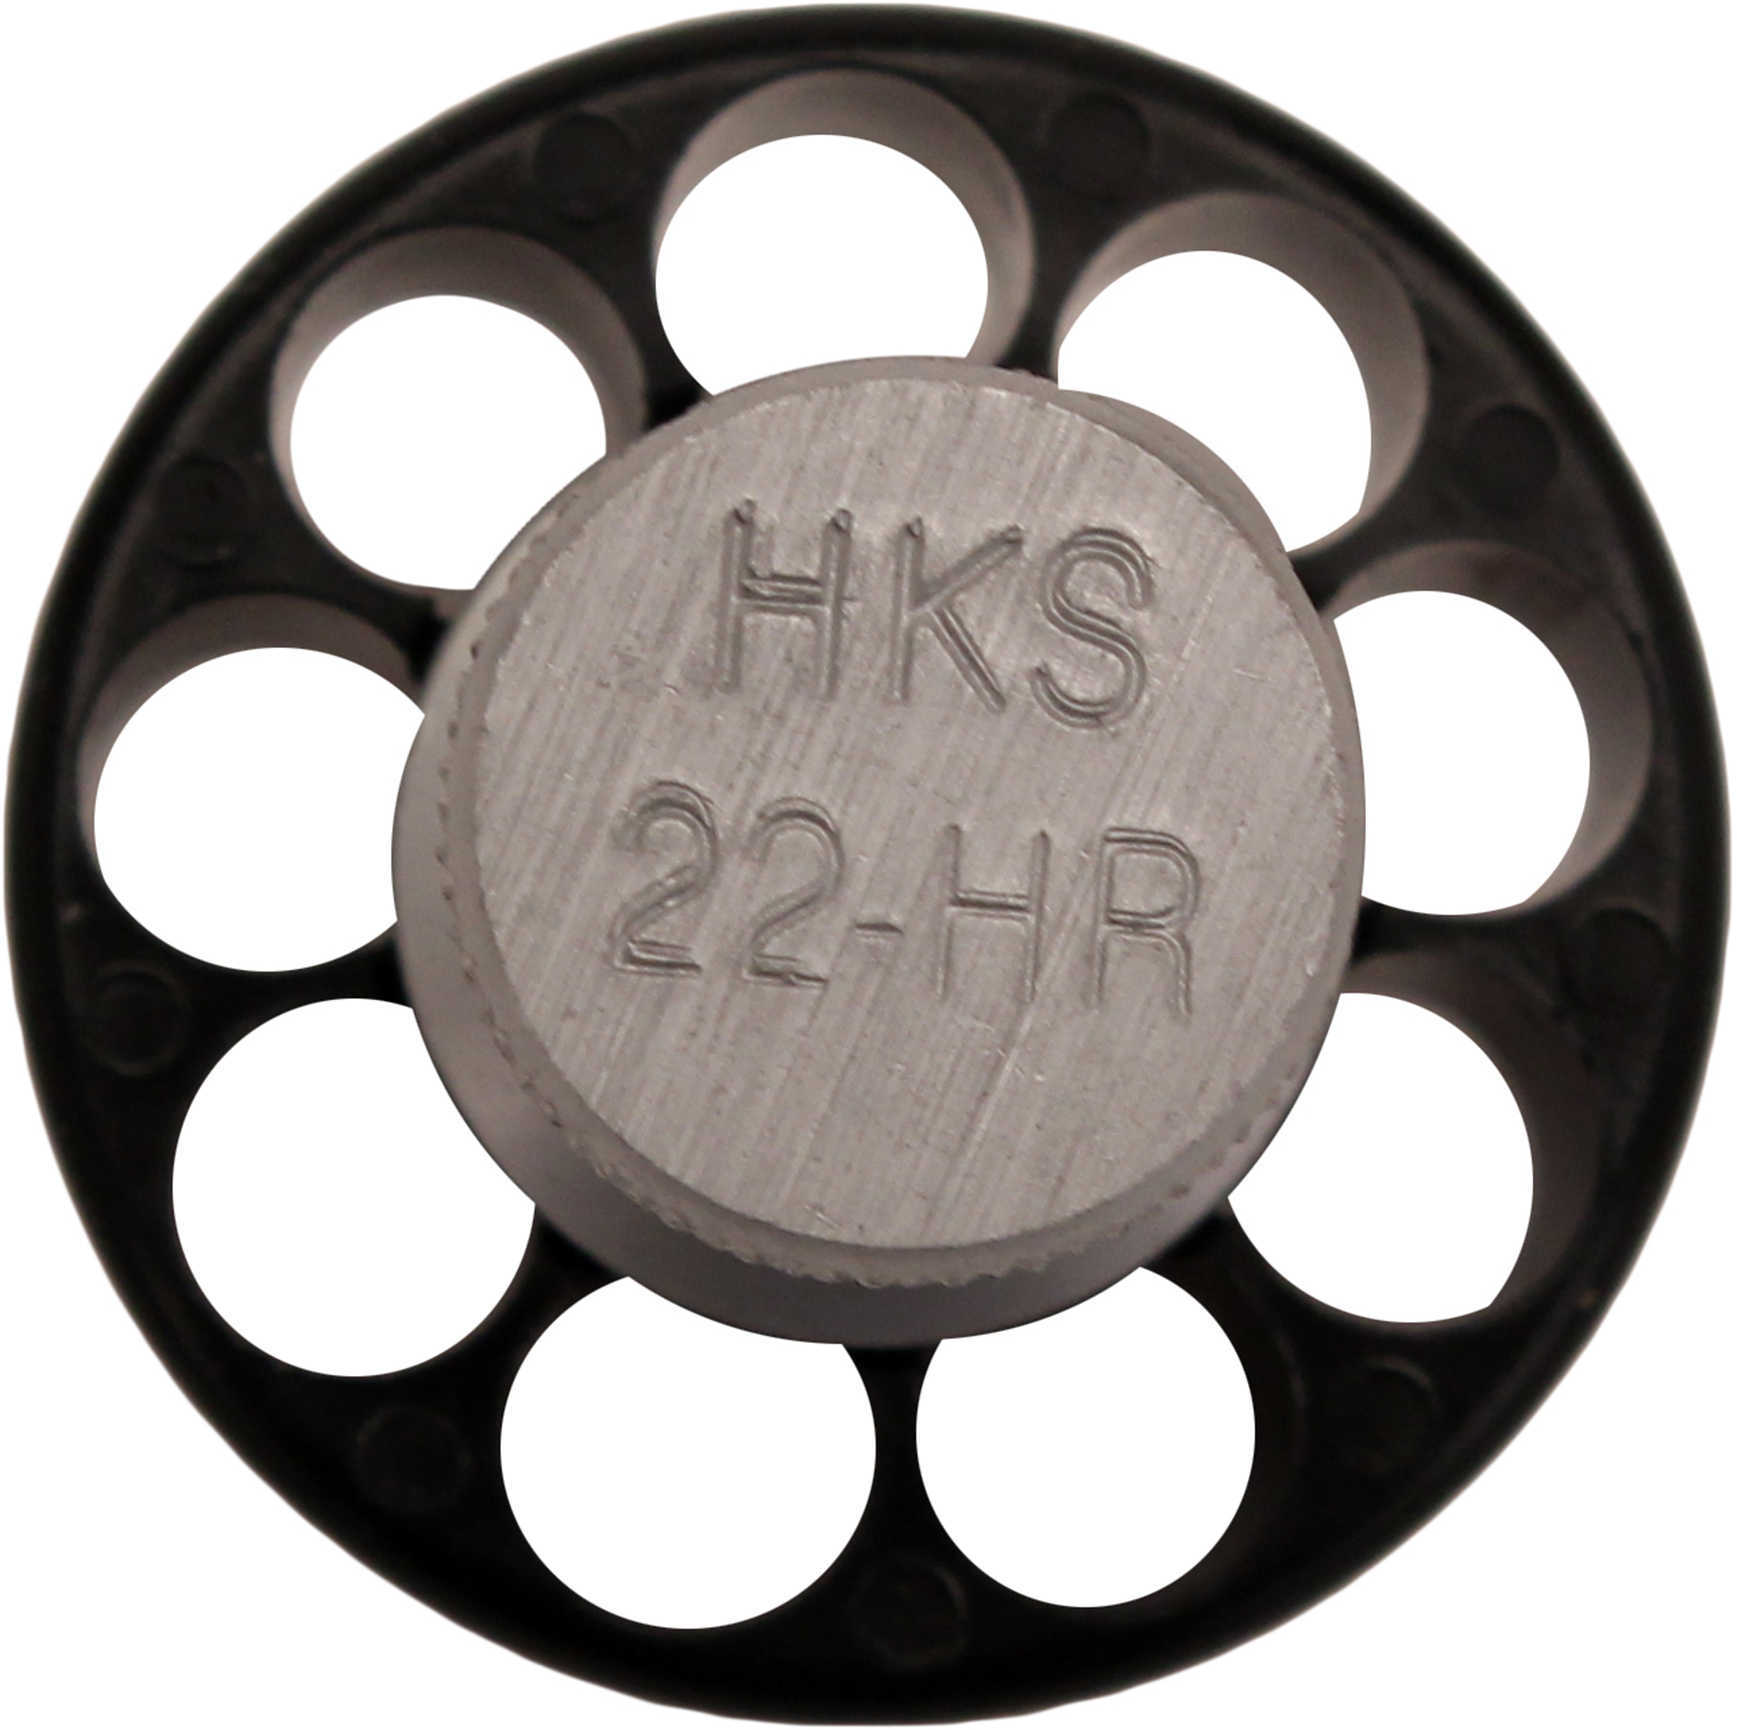 HKS Speedloader Series M .22 LR